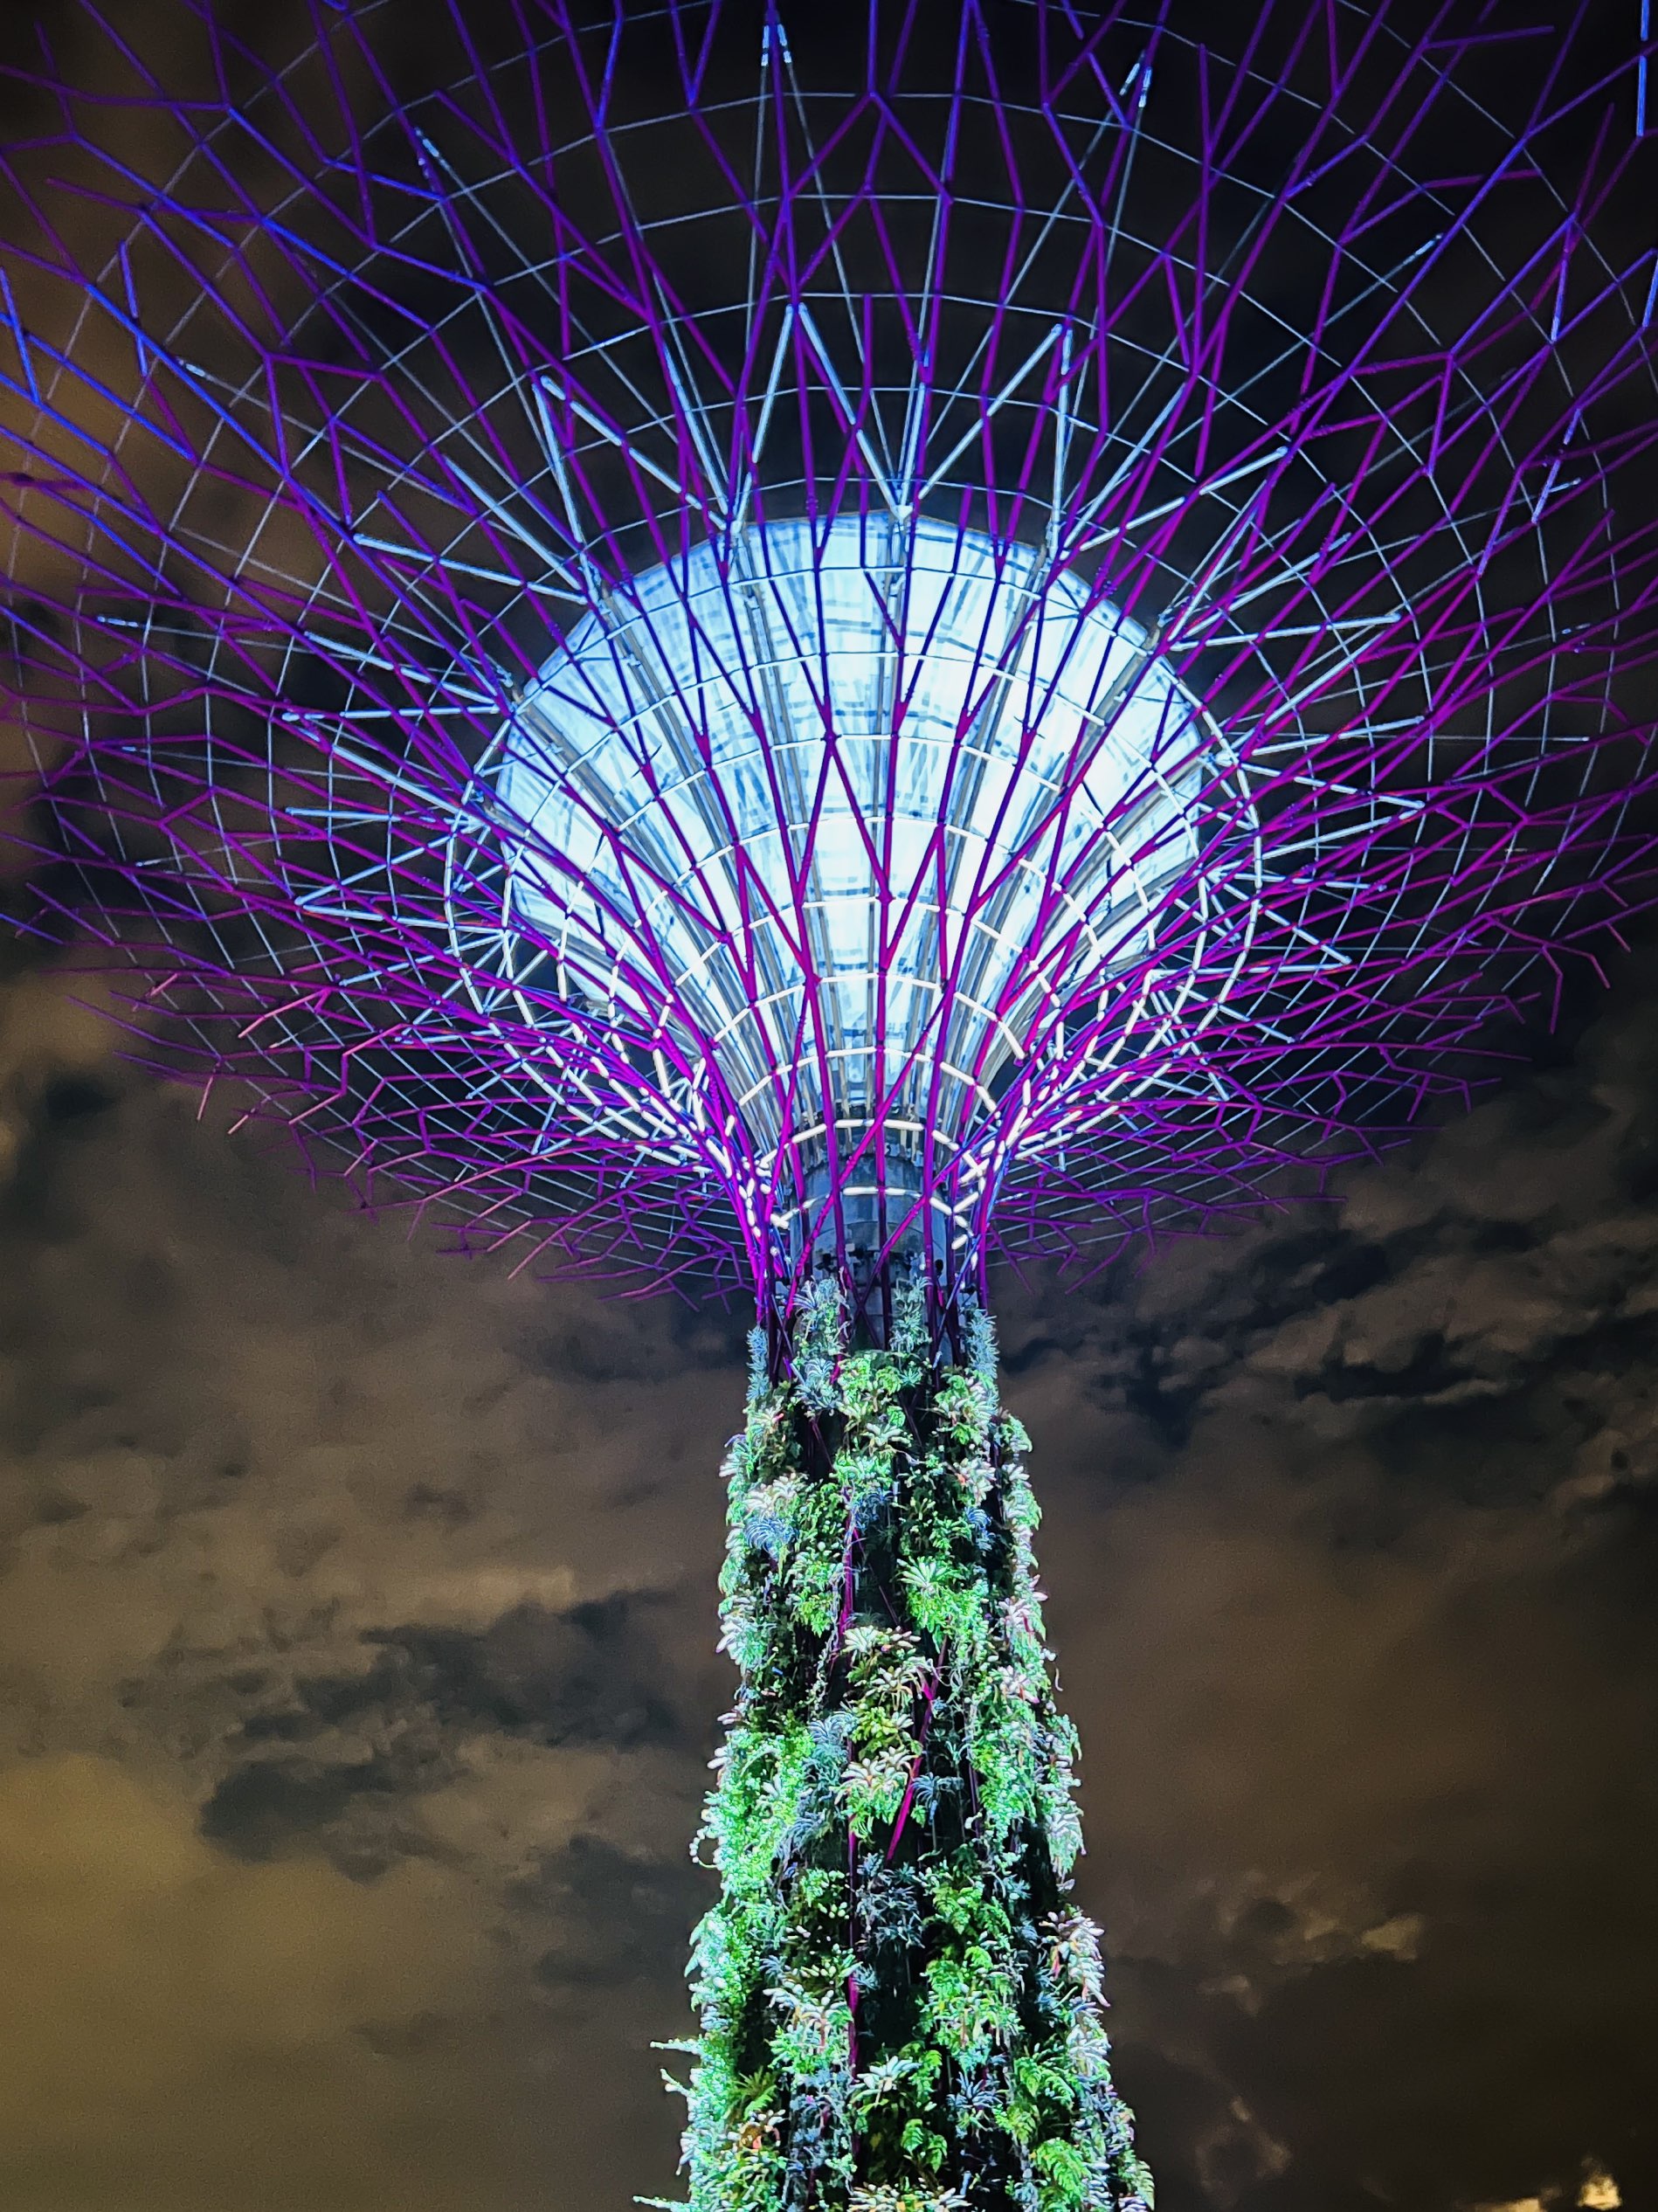 Singapore's Gardens by the Bay Light show | Trip.com Singapore